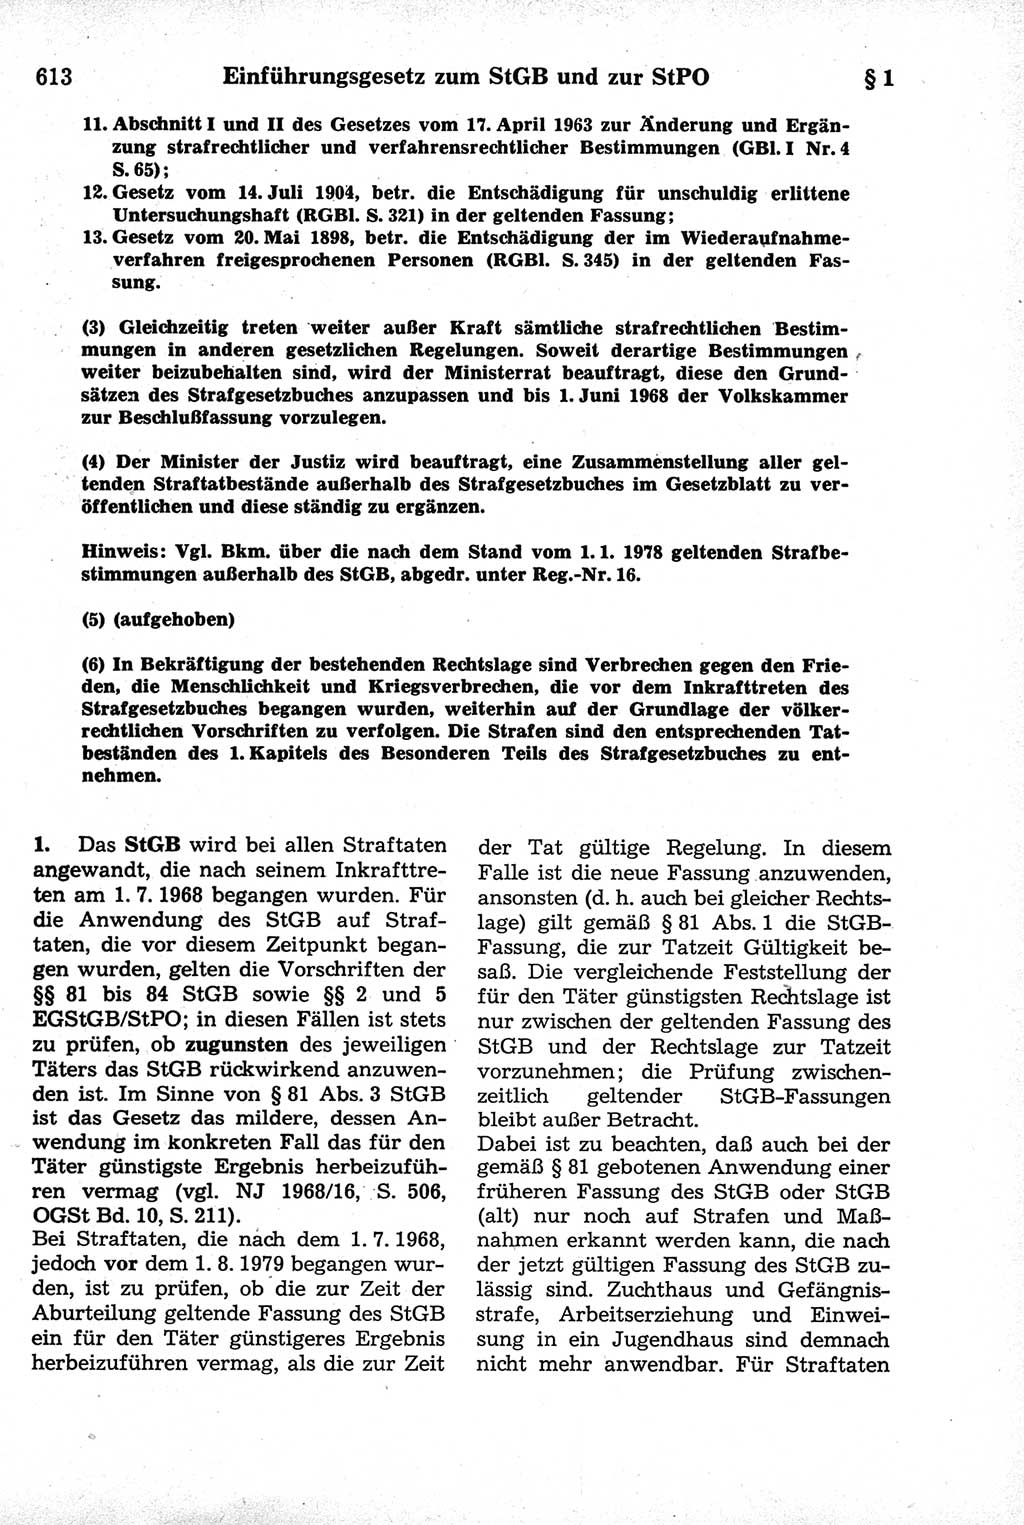 Strafrecht der Deutschen Demokratischen Republik (DDR), Kommentar zum Strafgesetzbuch (StGB) 1981, Seite 613 (Strafr. DDR Komm. StGB 1981, S. 613)